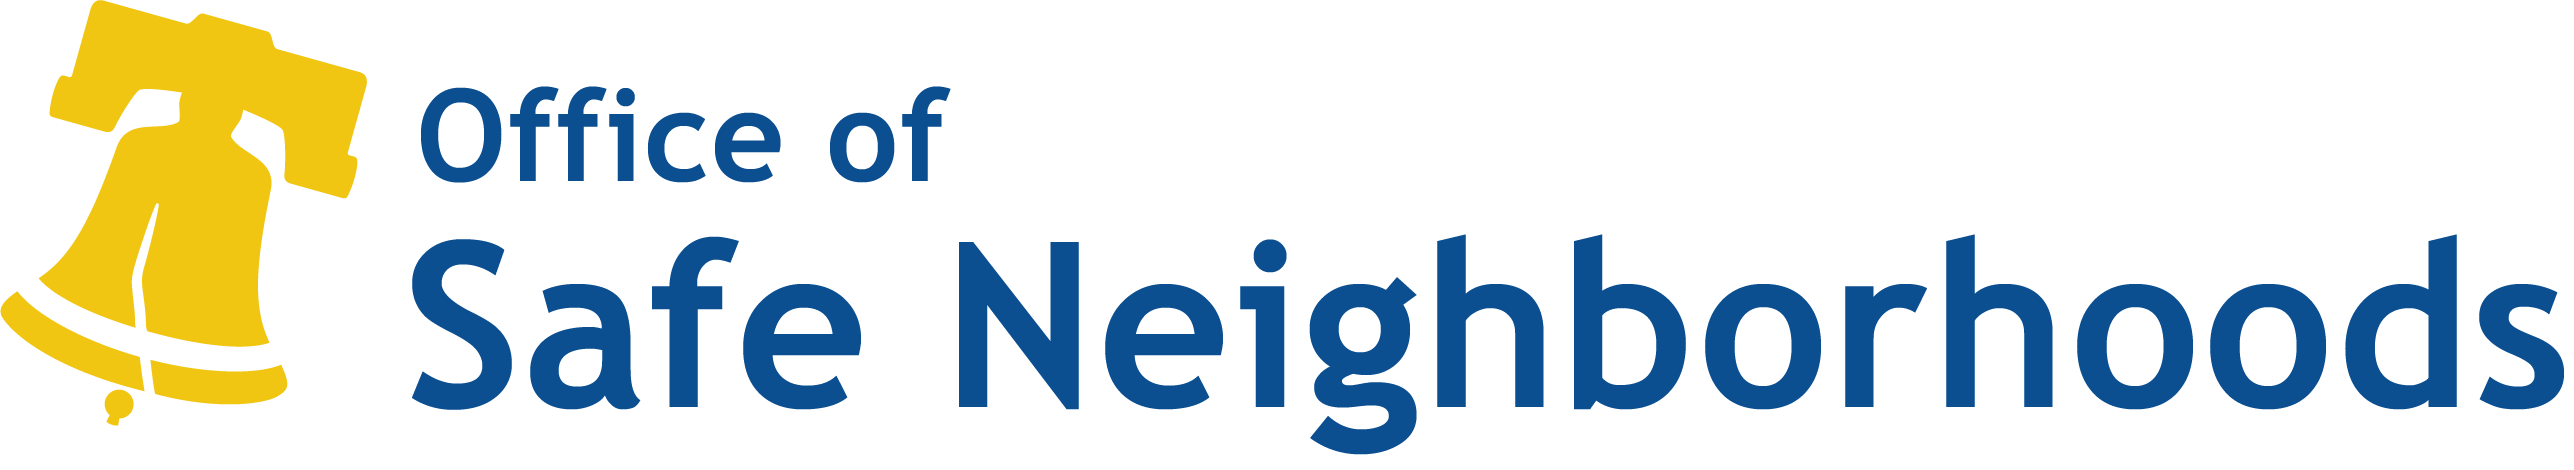 Logotipo de la Oficina de Vecindarios Seguros